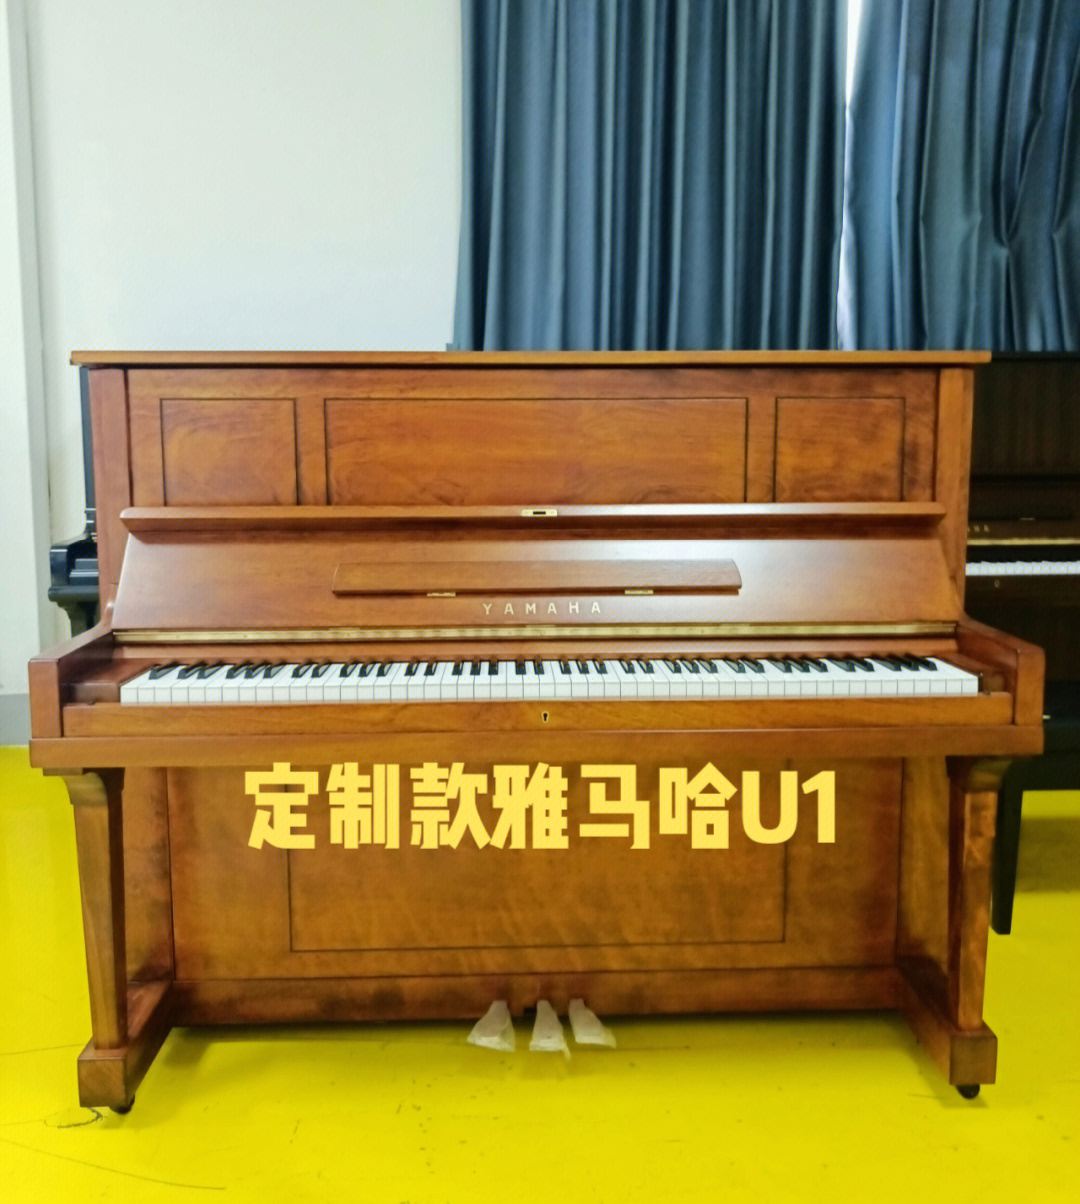 市面上非常少有的款式钢琴雅马哈u1